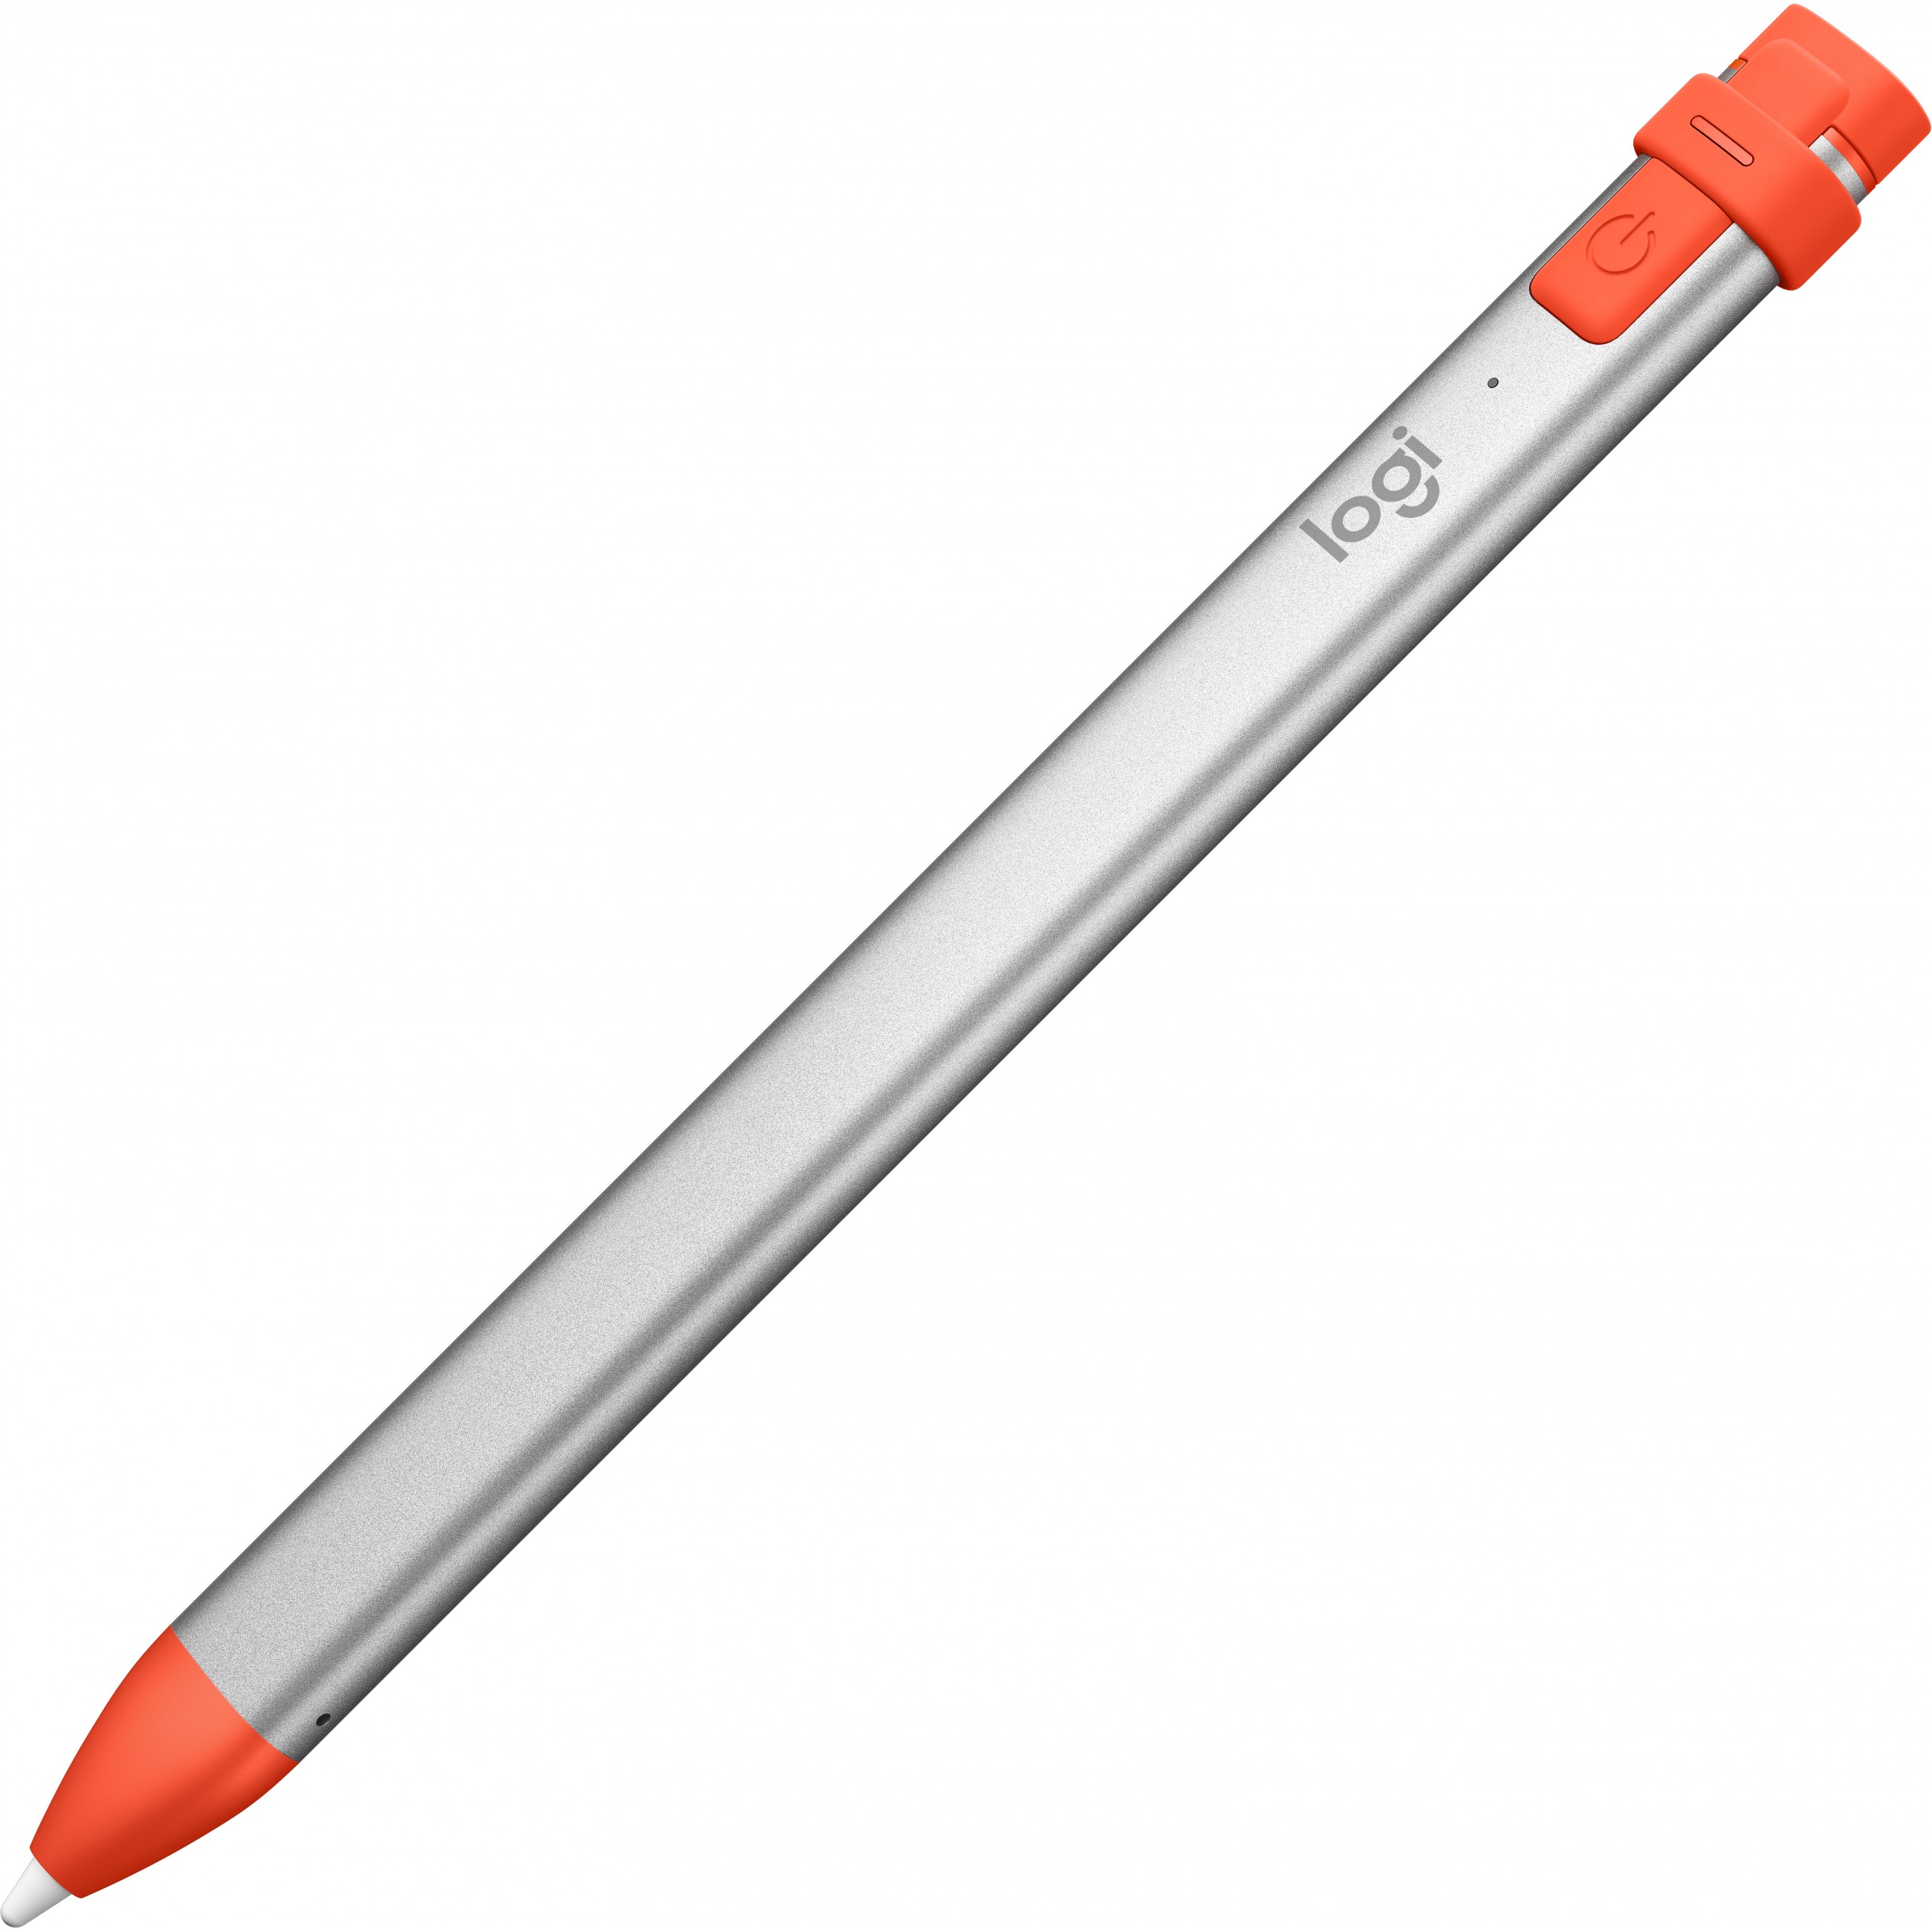 Logitech Crayon stylus pen